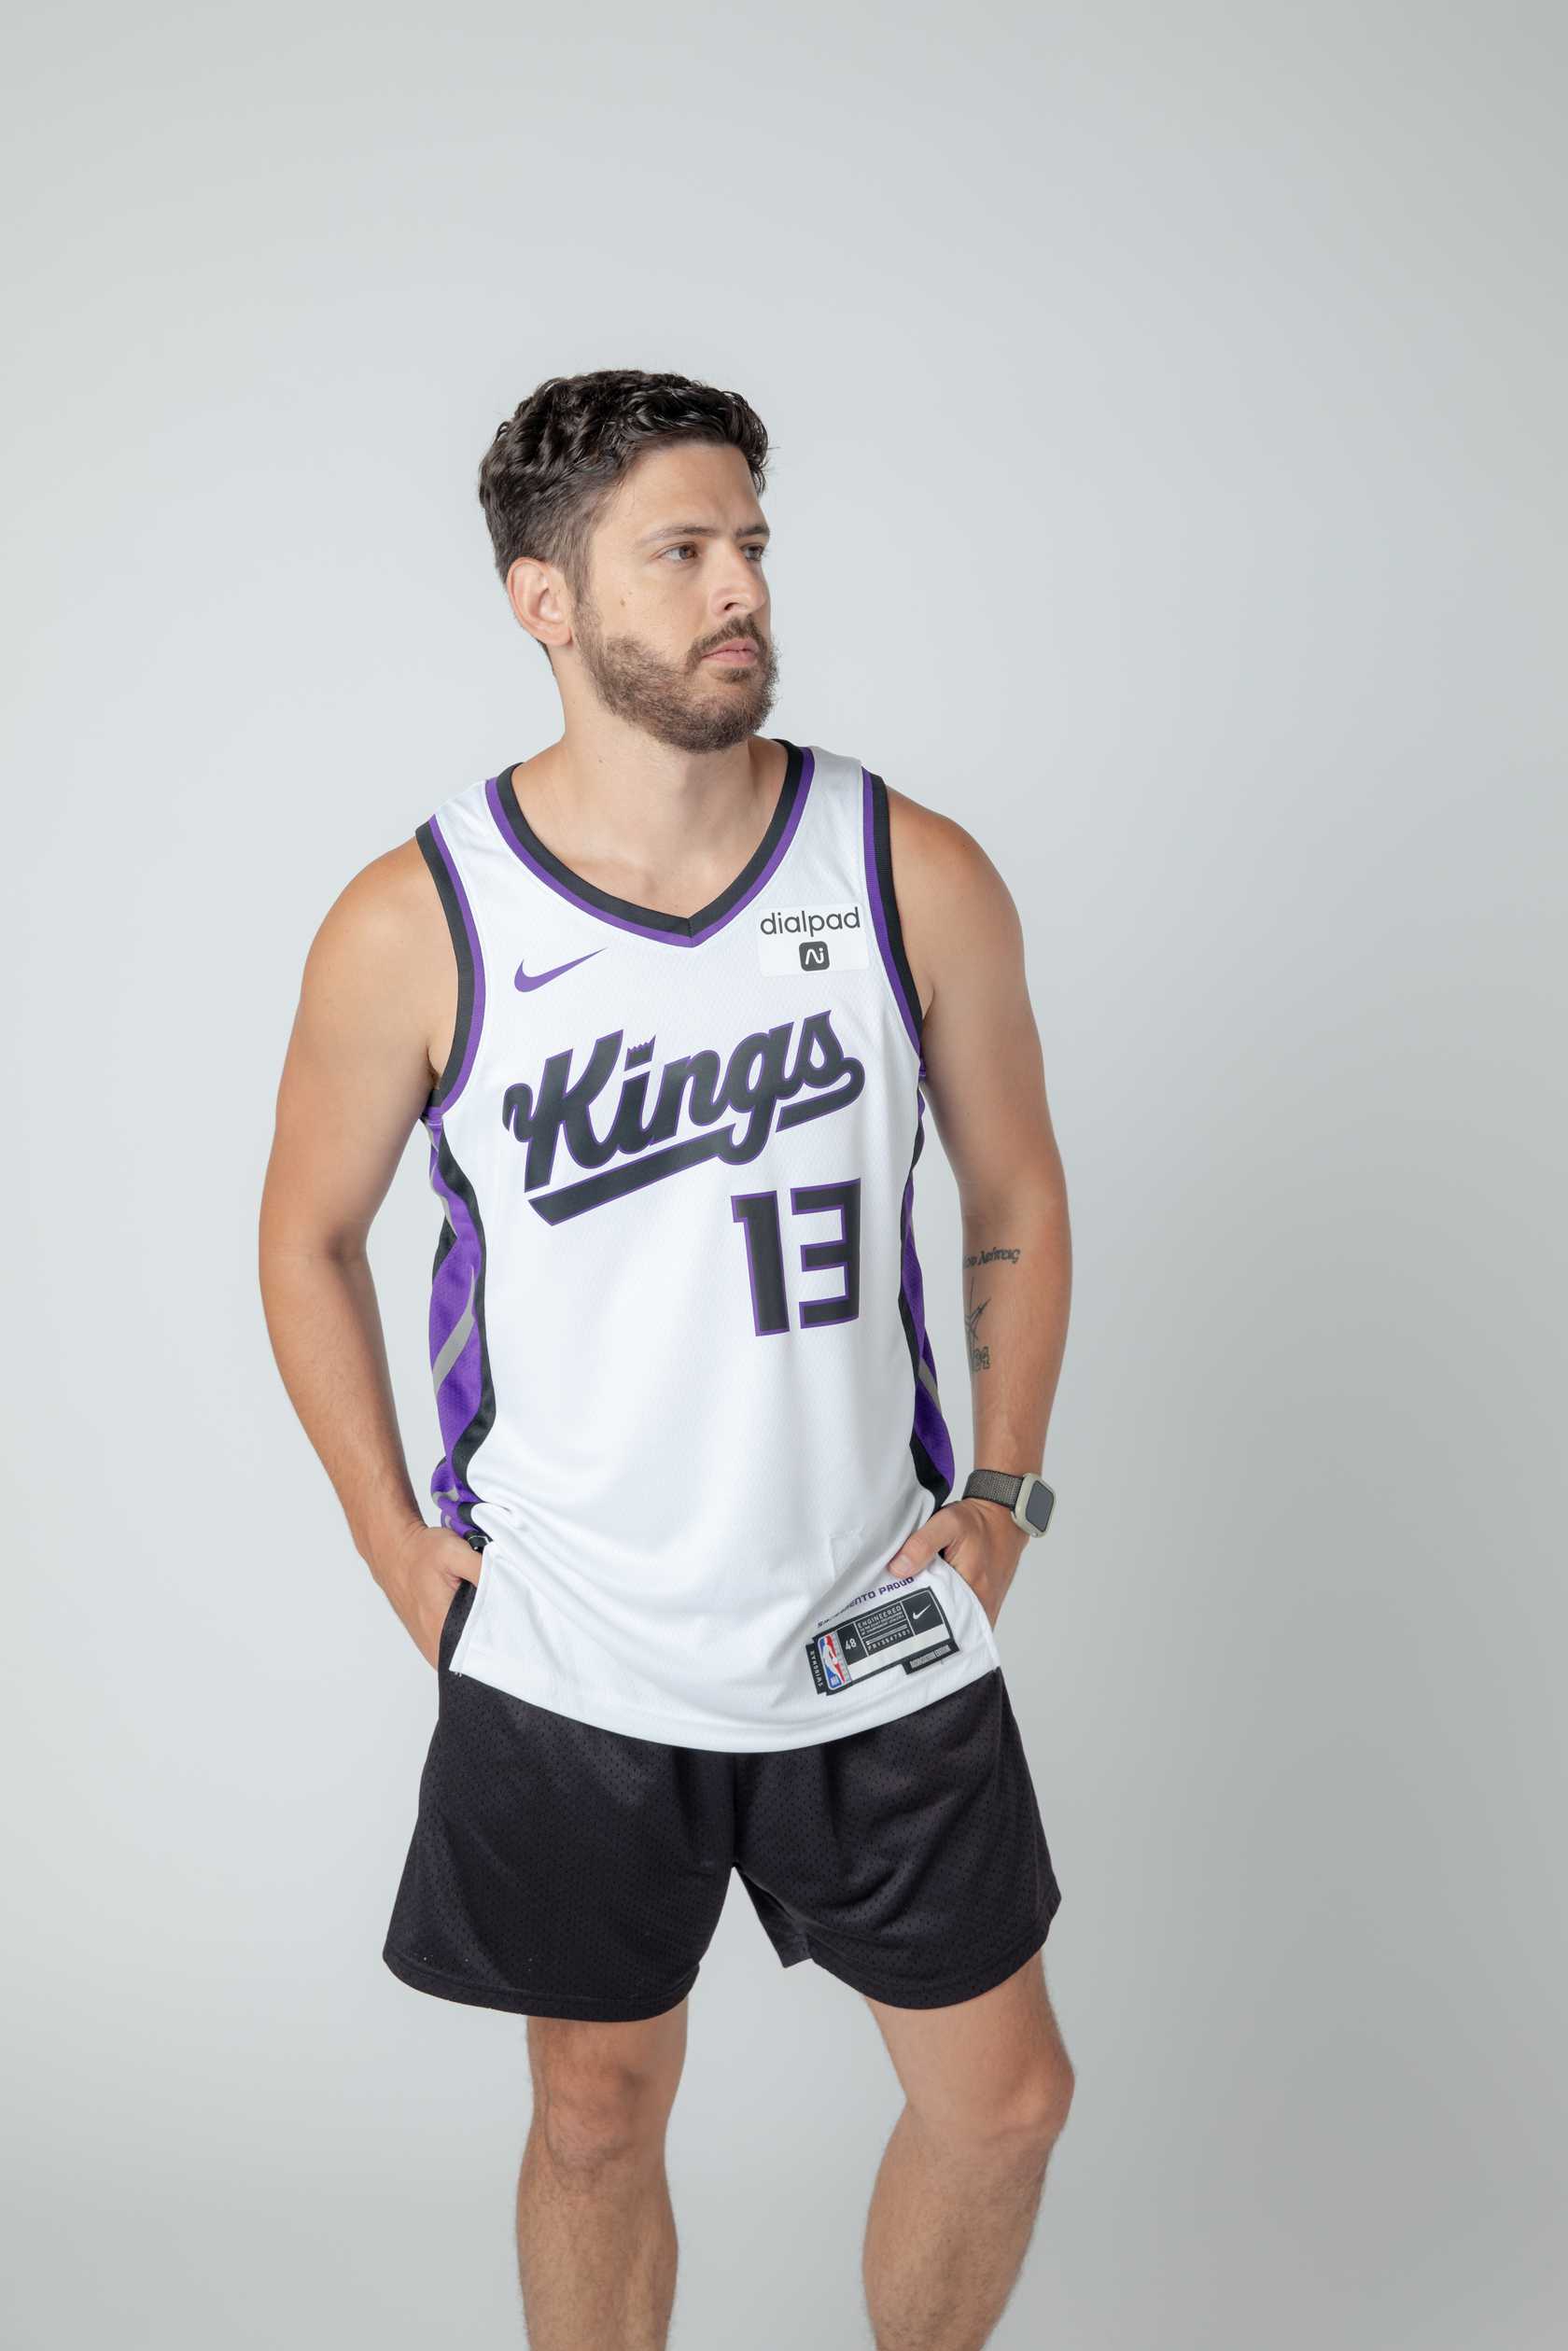 Sacramento Kings Basketball Jersey Design  Basketball jersey, Best  basketball jersey design, Jersey design